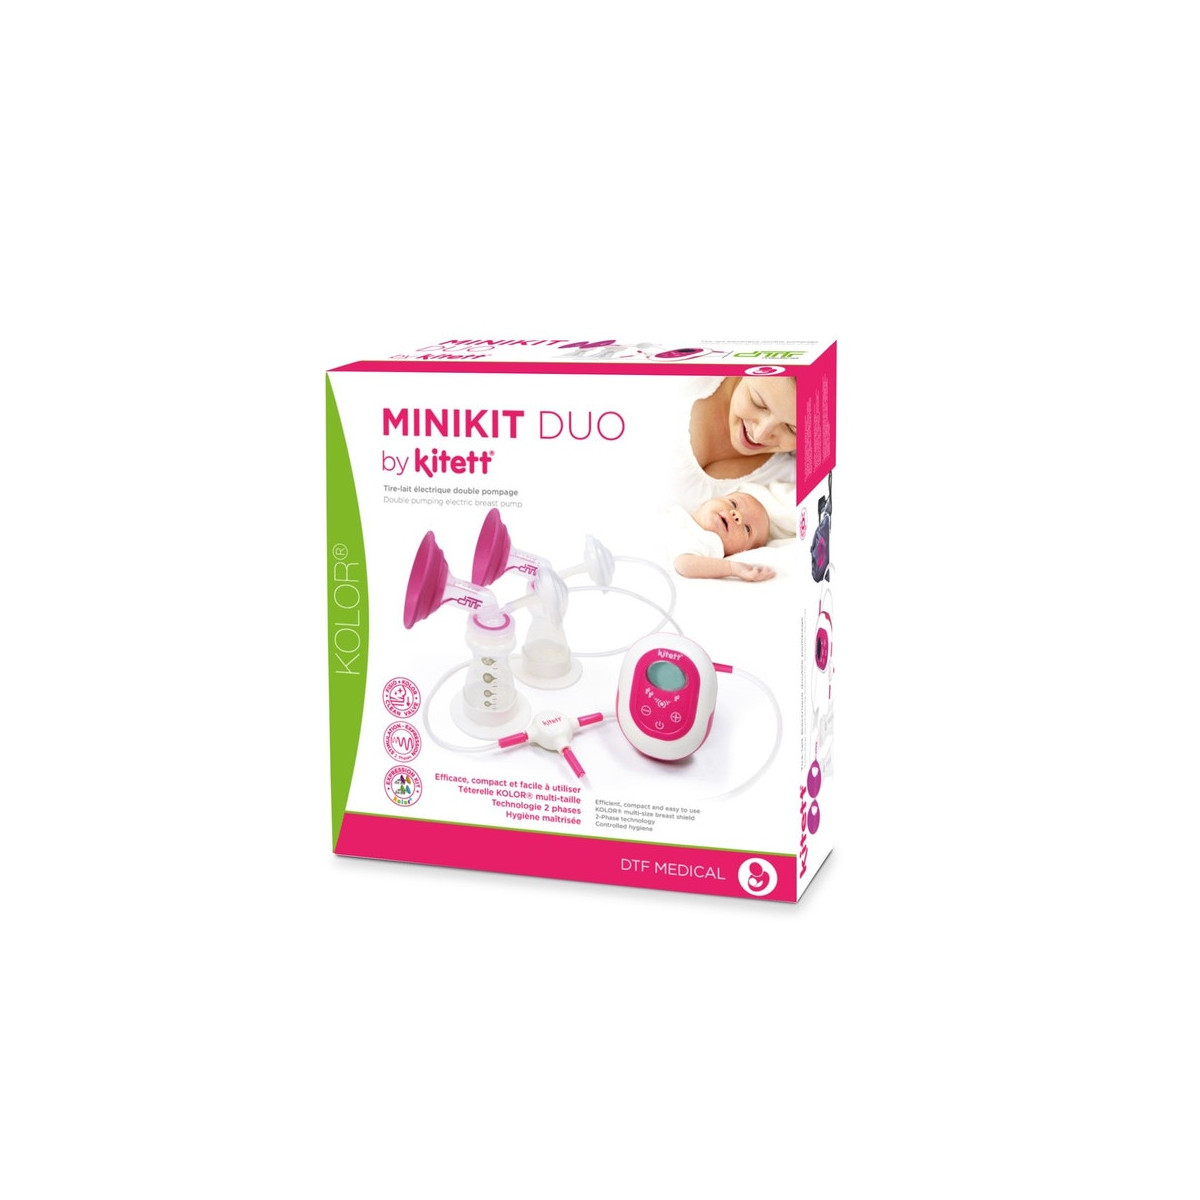 Minikit Duo